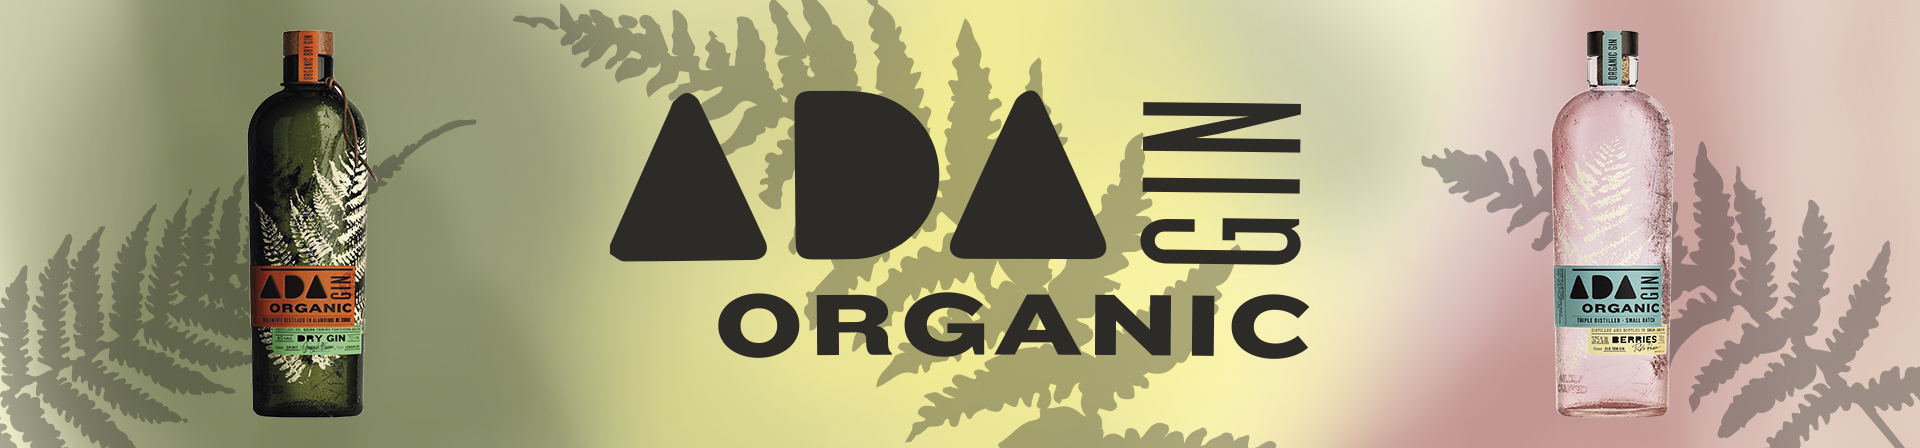 ADA Organic Gin